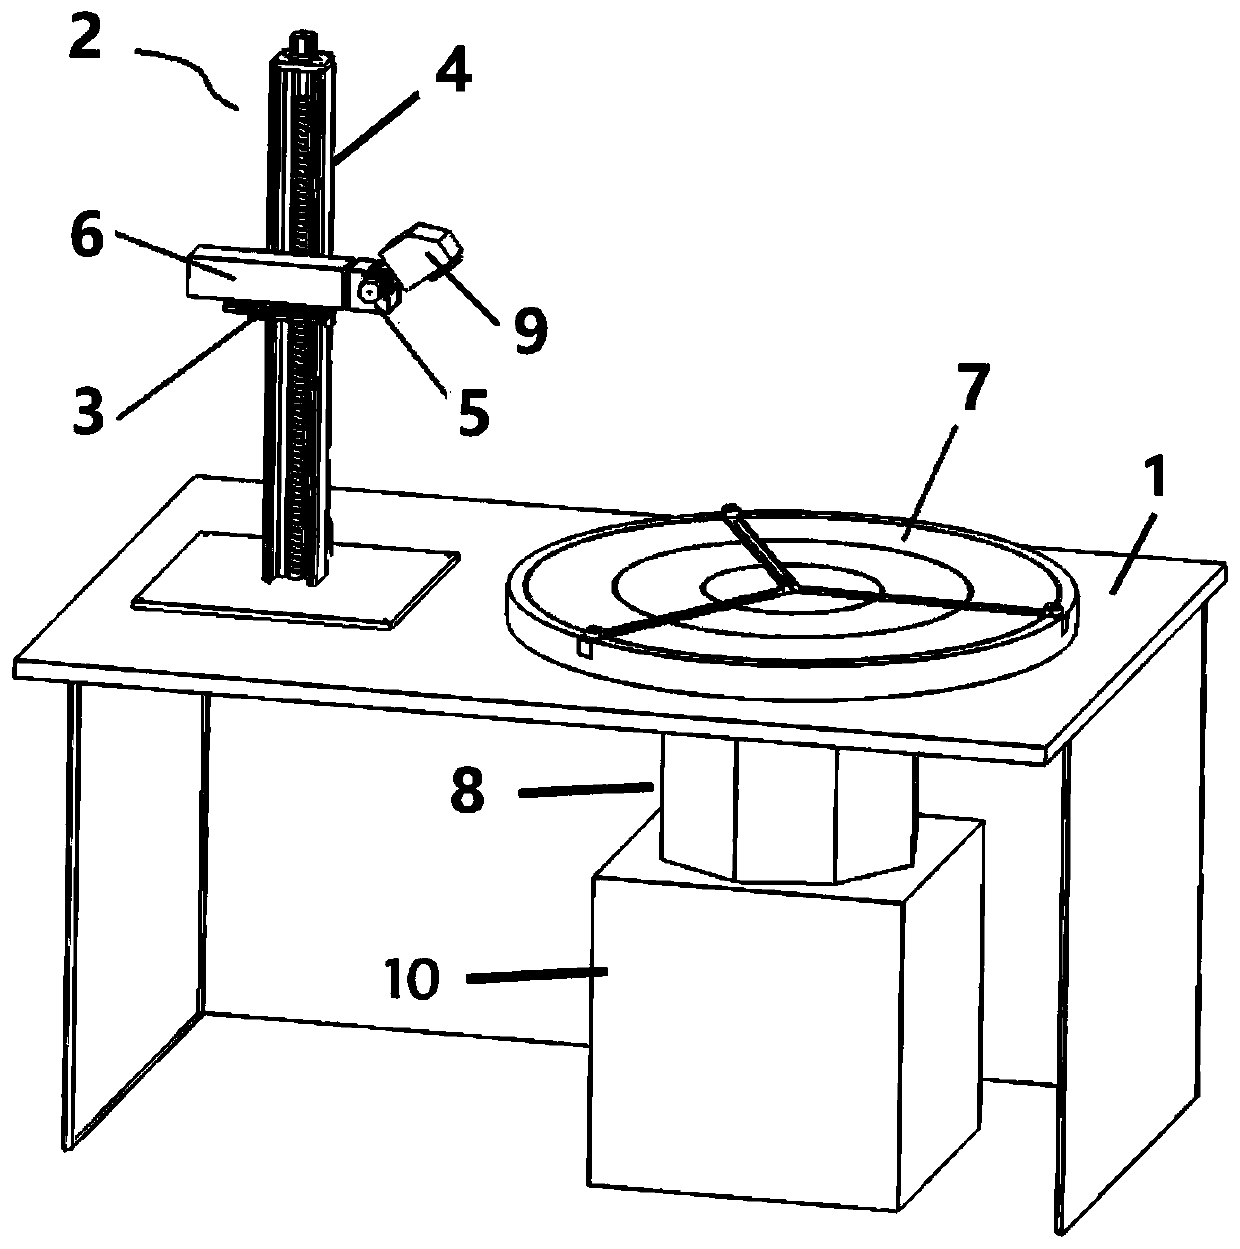 Laser processing platform for circular cylinder punching